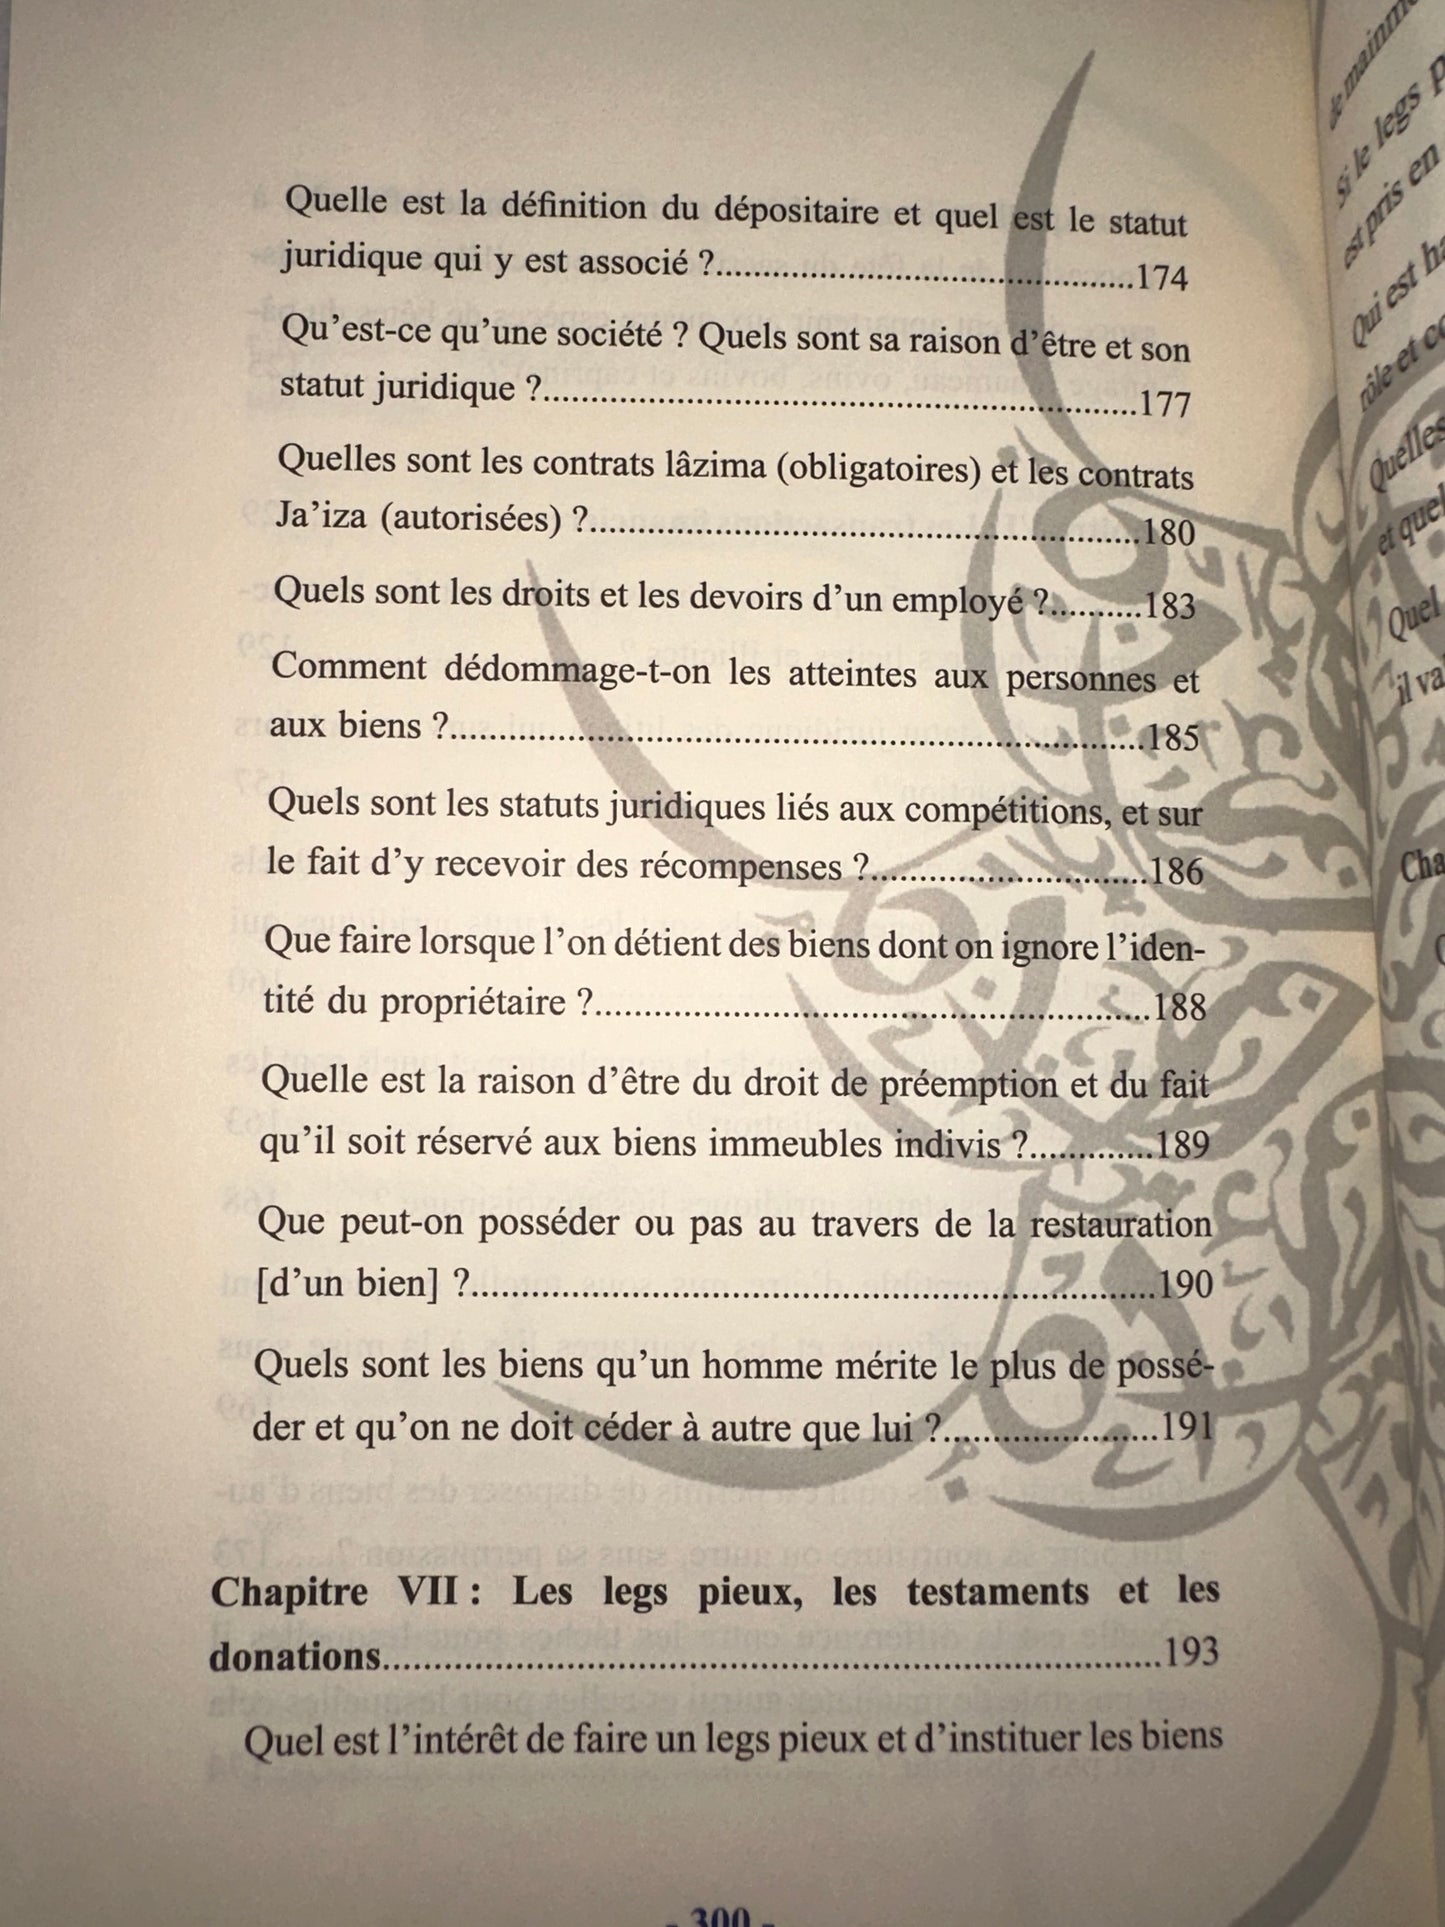 Guide Destiné Aux Clairvoyants Afin De Connaitre Le Fiqh, De Abderrahman Ibn Nâsir As-Sa'di